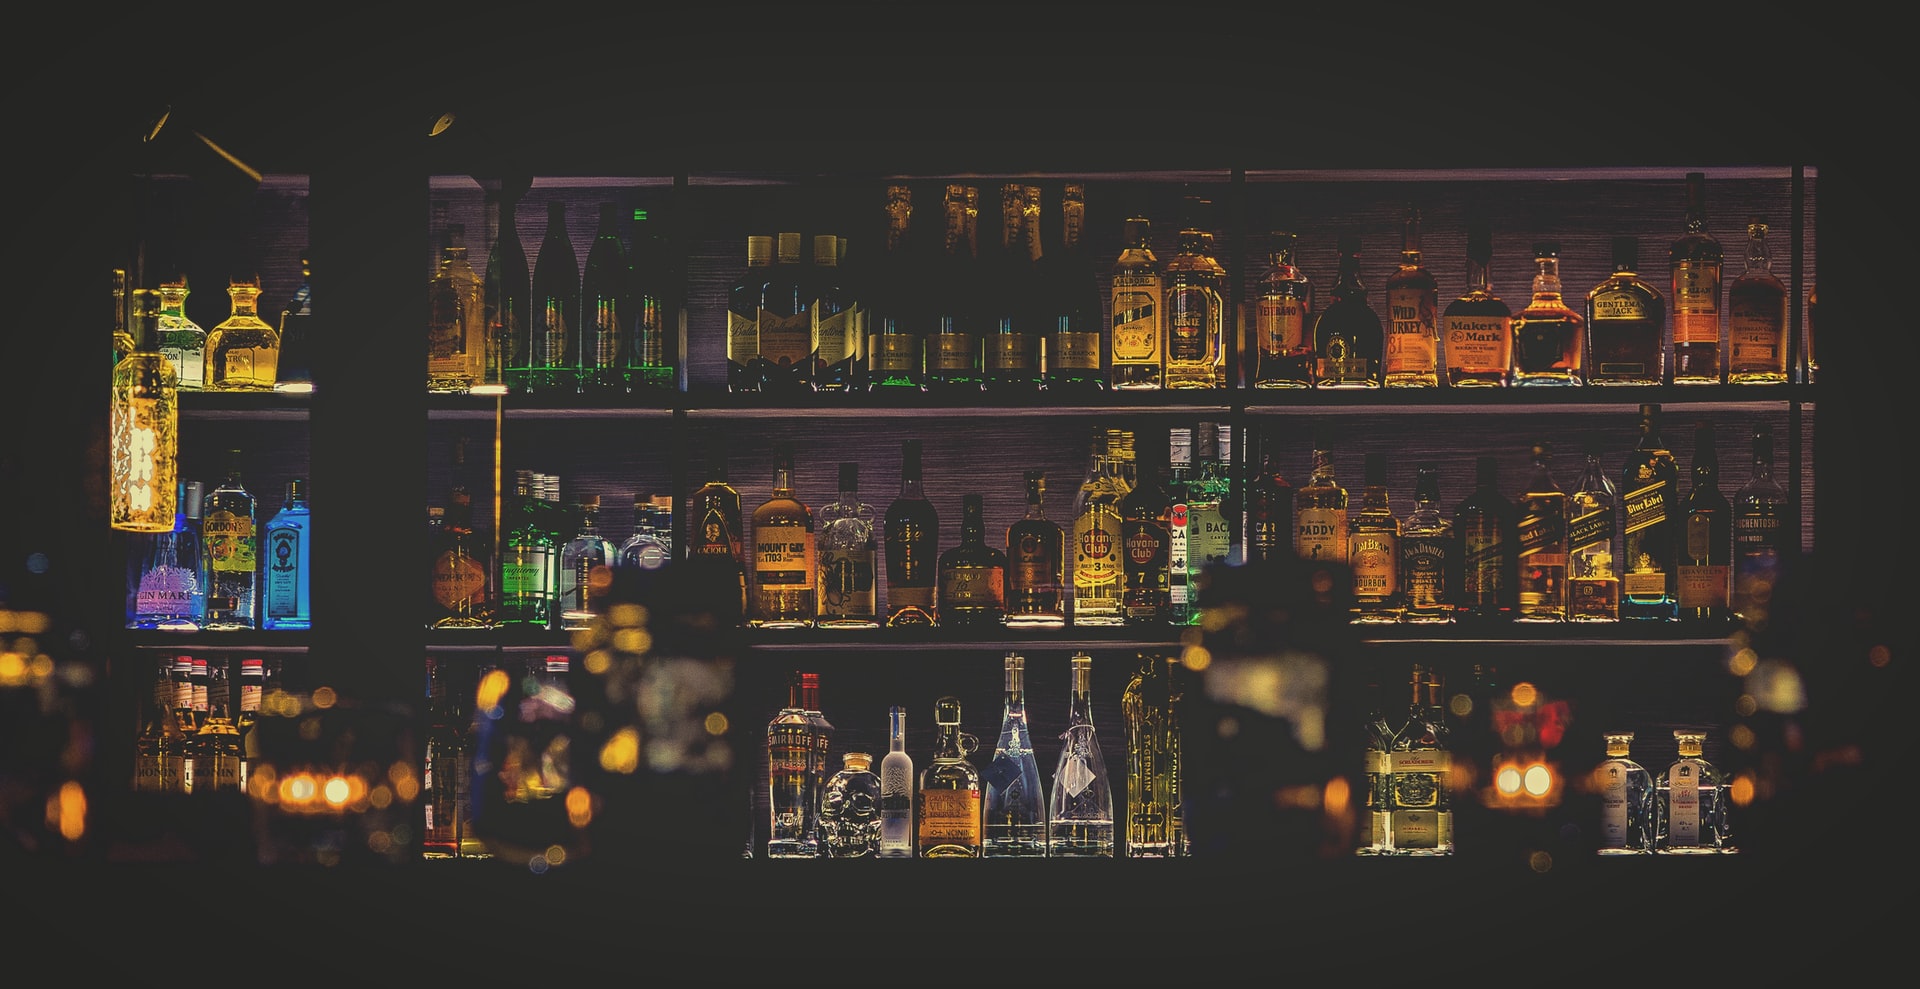 Shelves of bottles behind bar